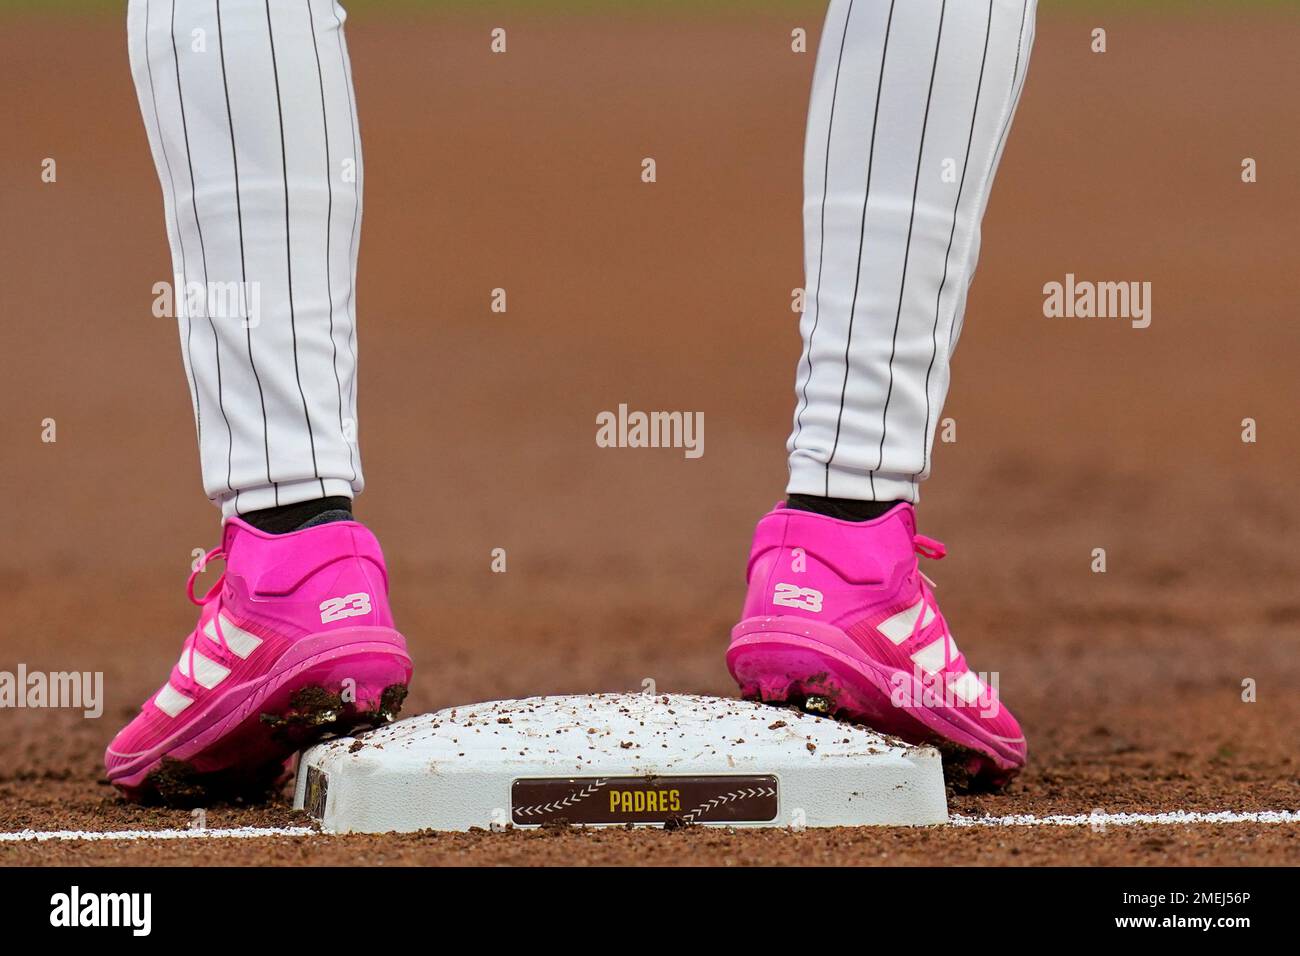 San Diego Padres' Fernando Tatis Jr. wears pink cleats as he